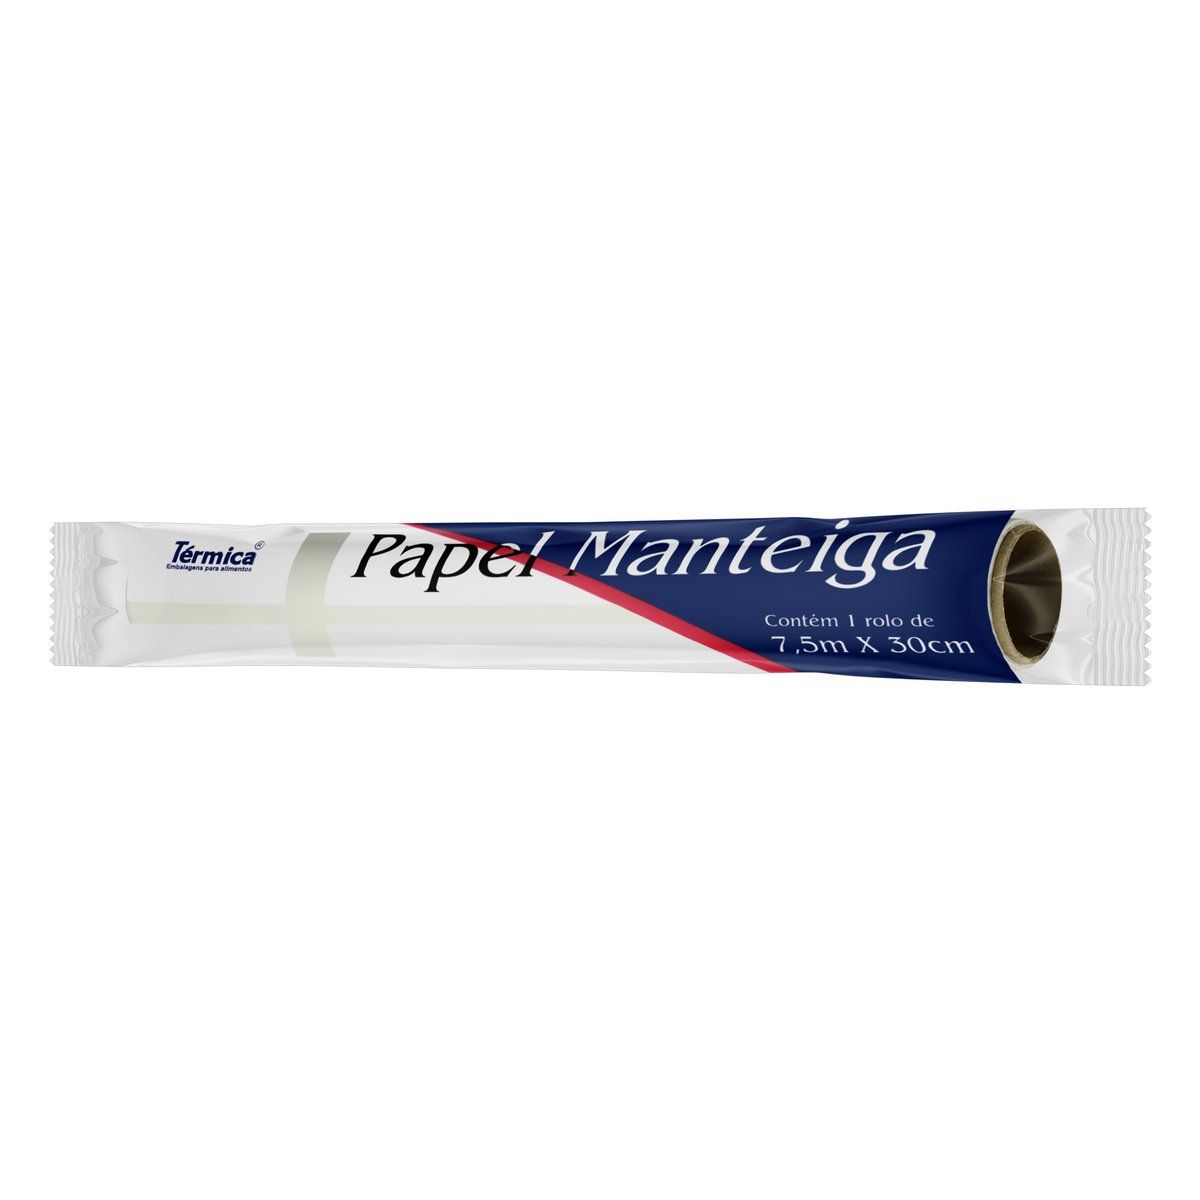 Papel Manteiga Térmica 7,5m x 30cm image number 1